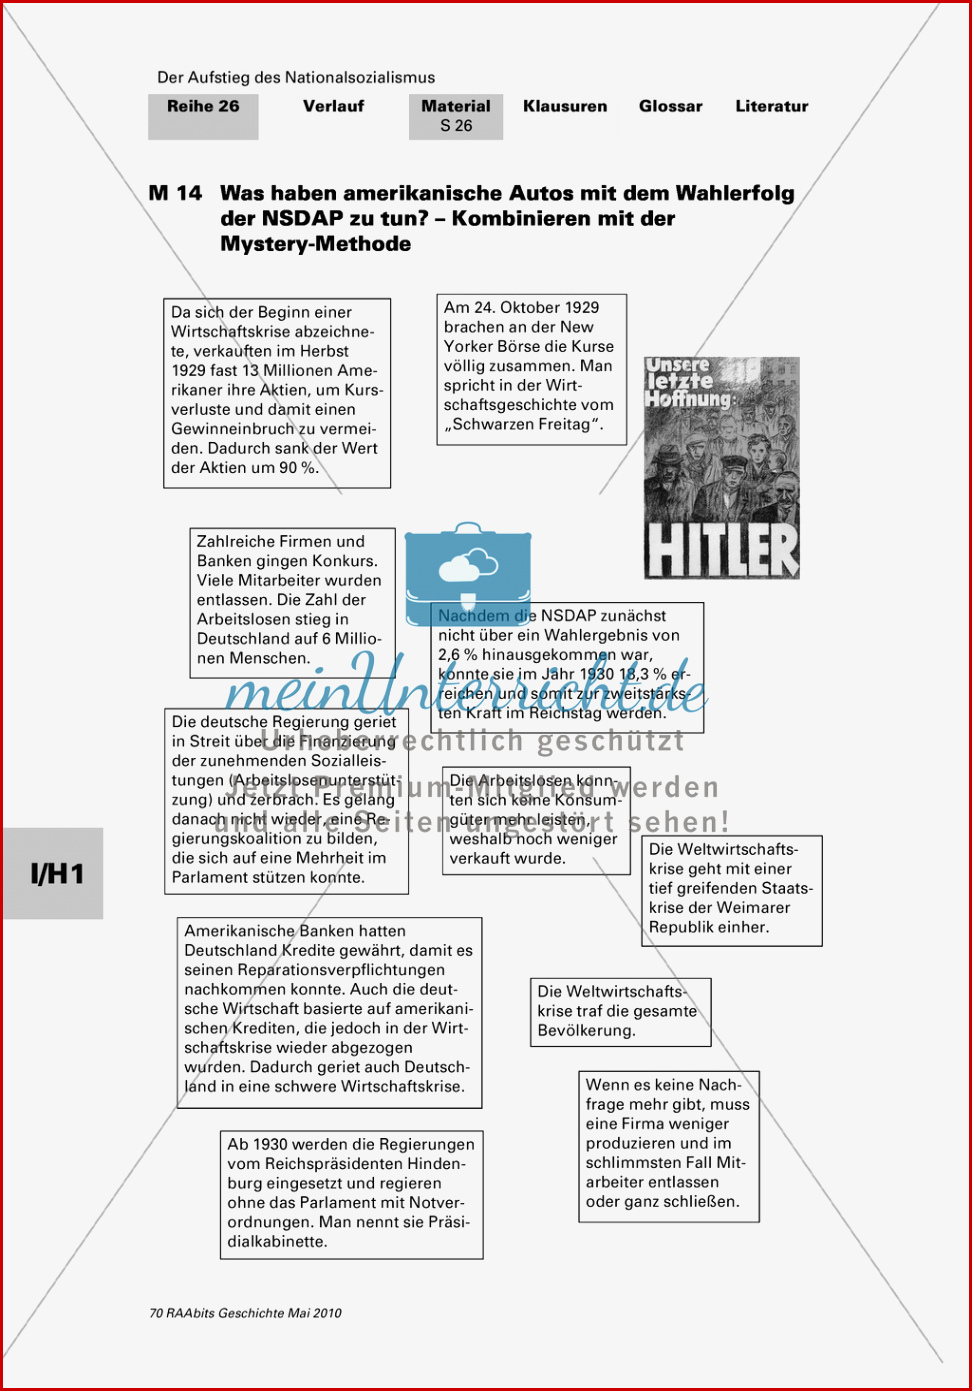 Der Aufstieg Des Nationalsozialismus In Der Weimarer